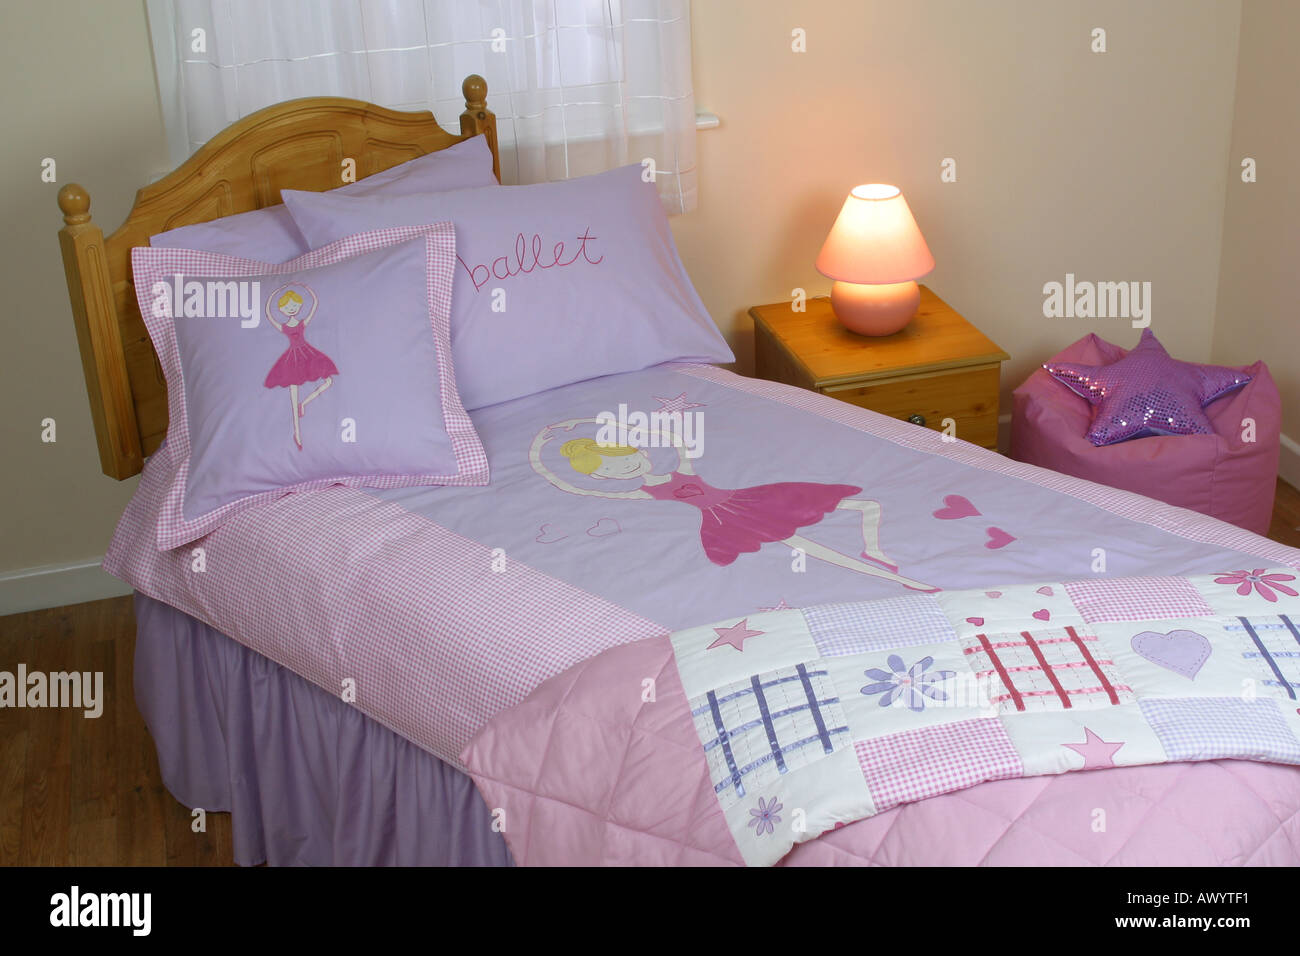 Bettbezug und Bettwäsche auf dem Display im store Stockfoto